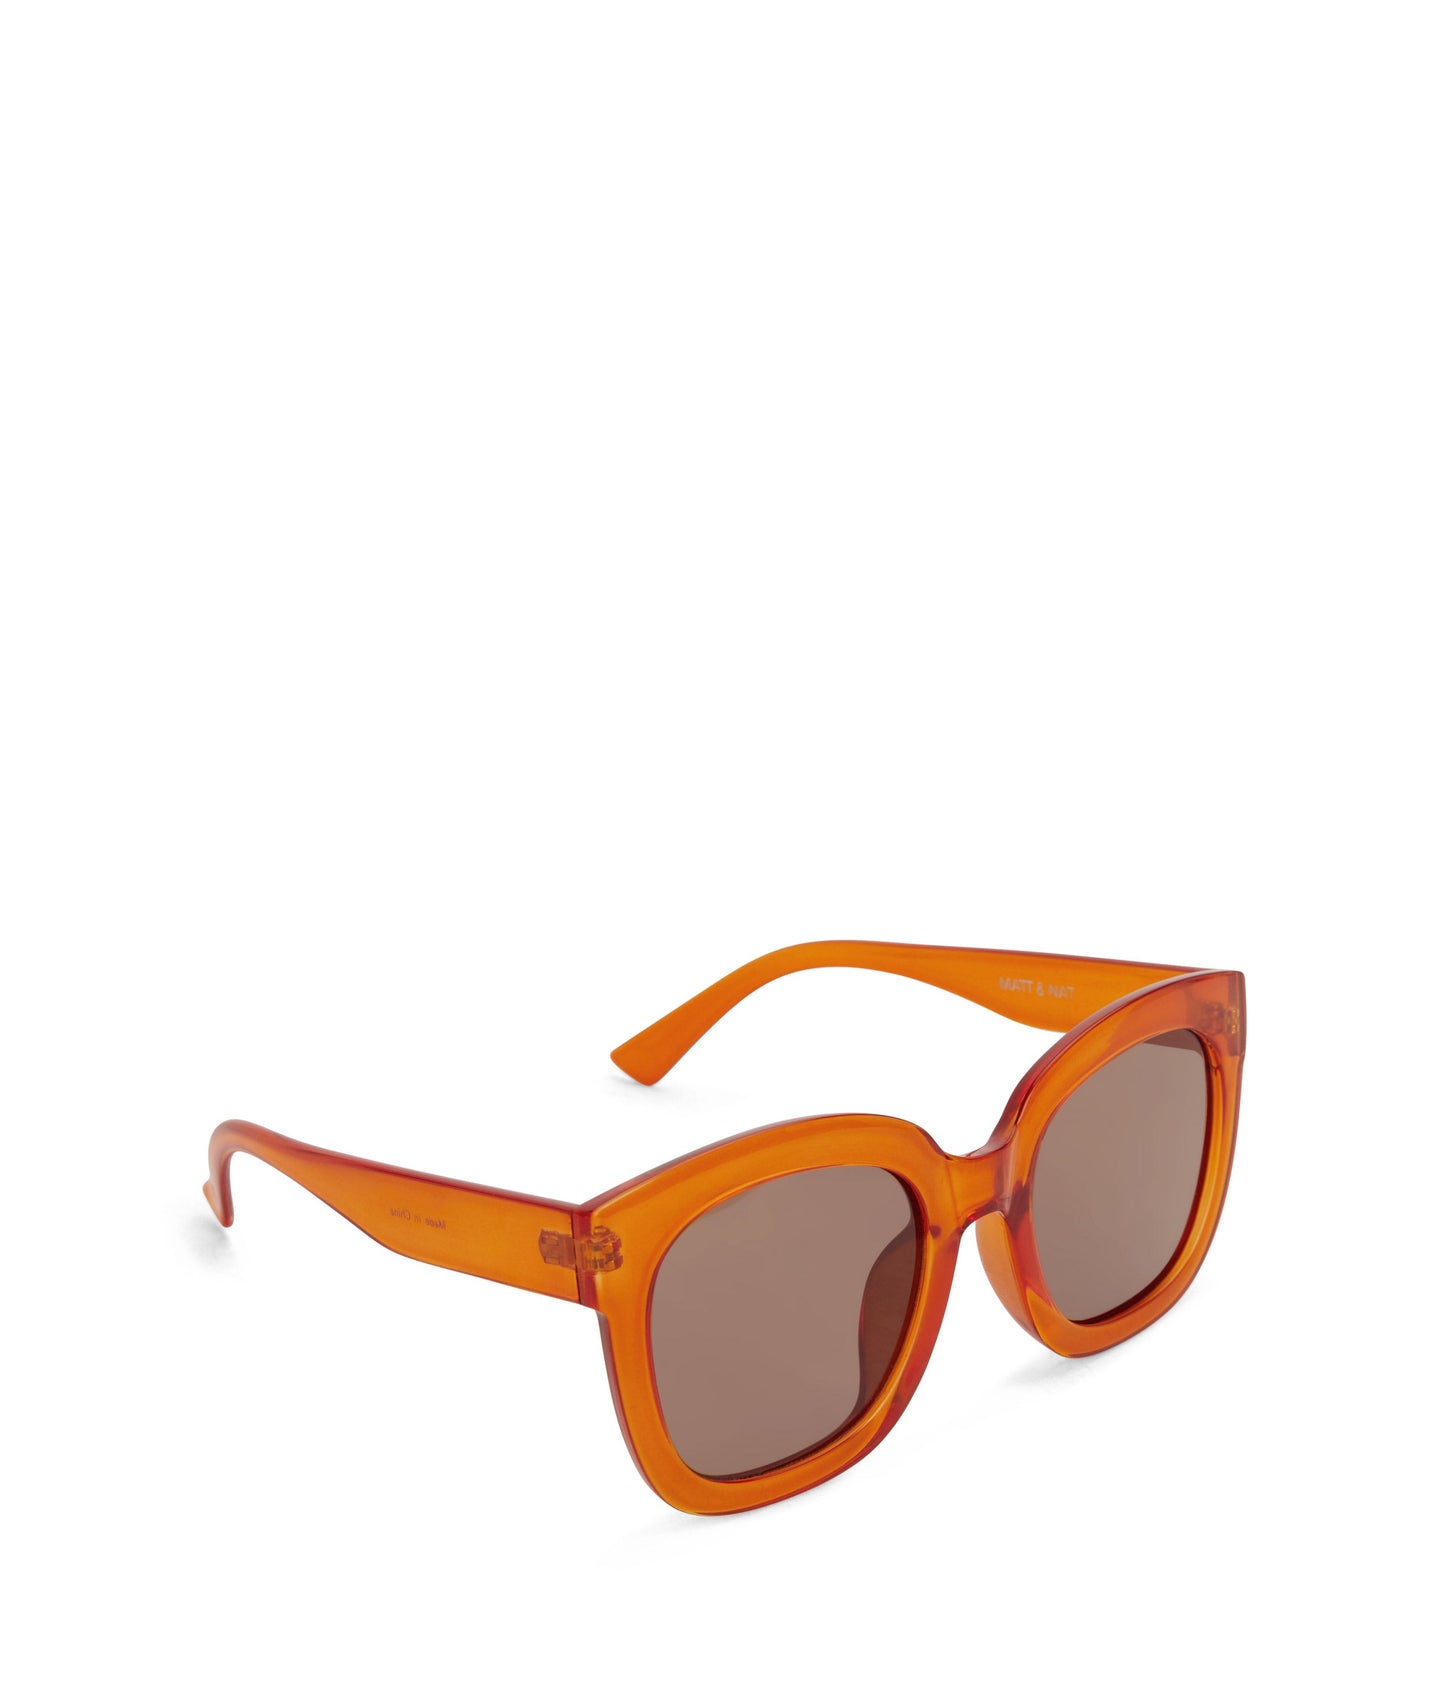 CHARLET Sunglasses | Color: Orange - variant::orange